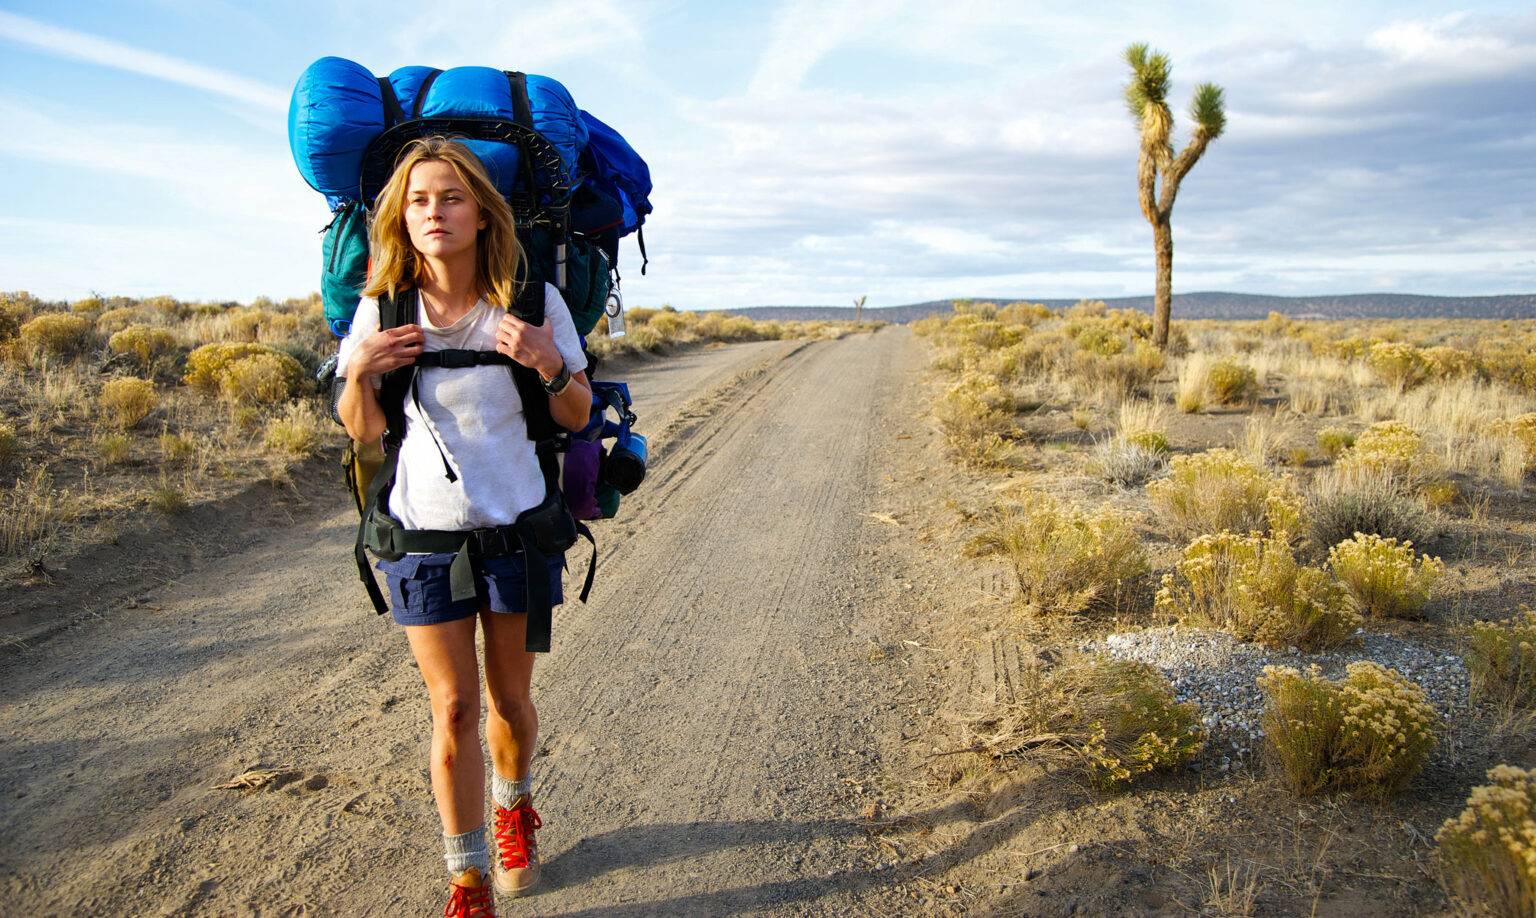 Путешествия в одиночку для женщин: развенчиваем мифы и разбираем опасности